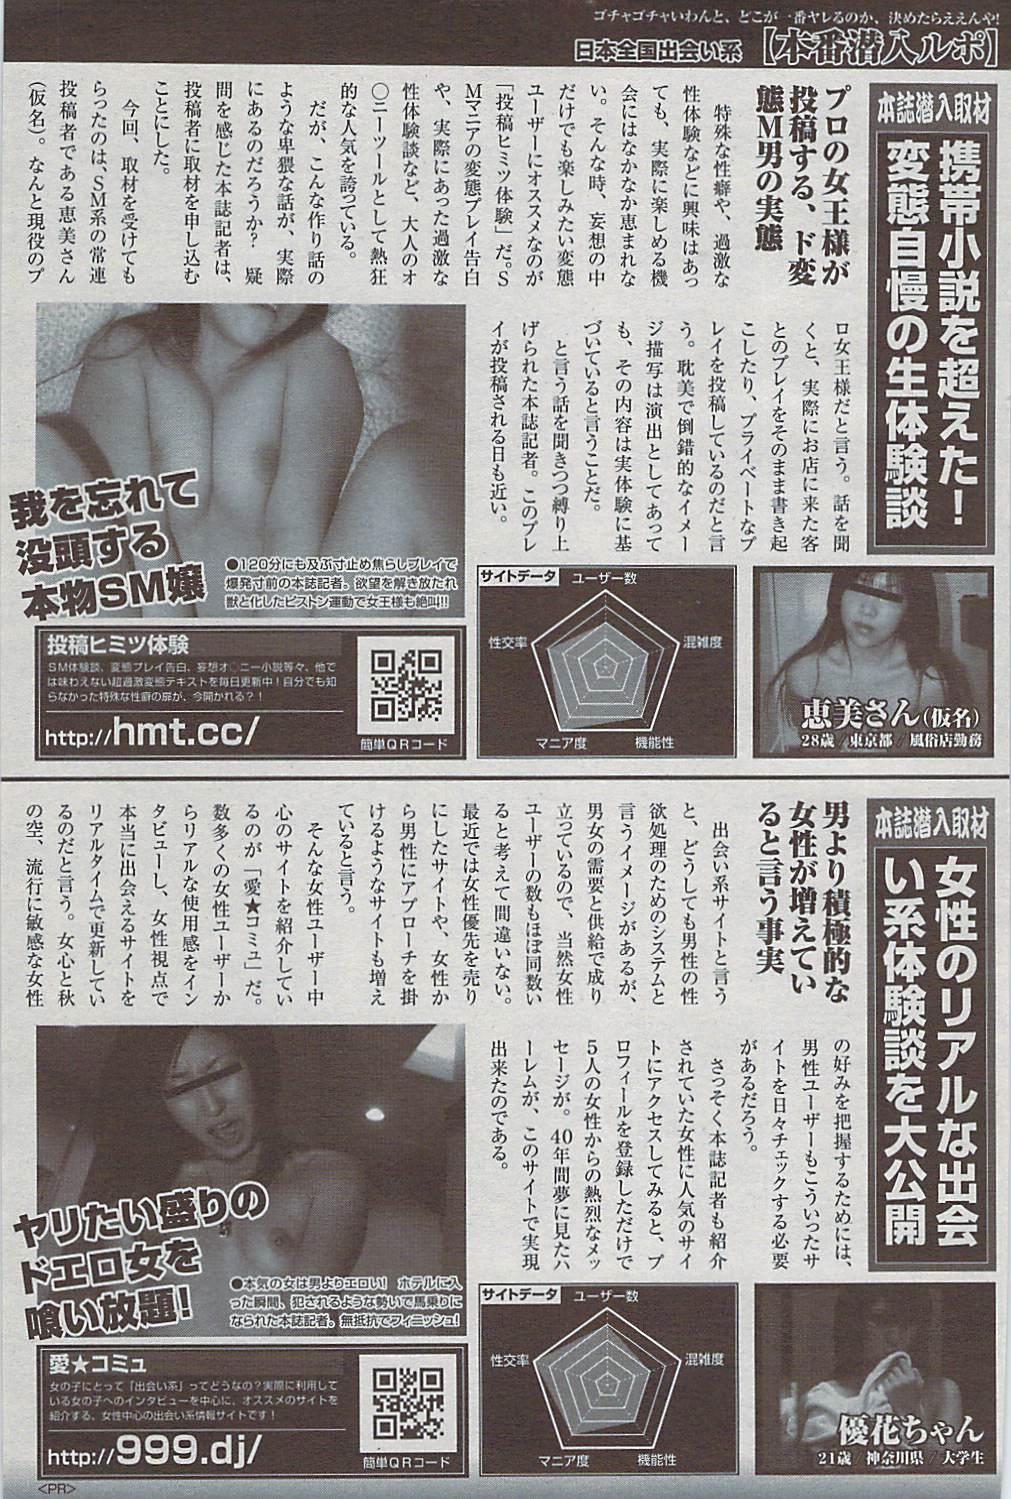 Mitsu-Man 2009-01 Vol. 5 134